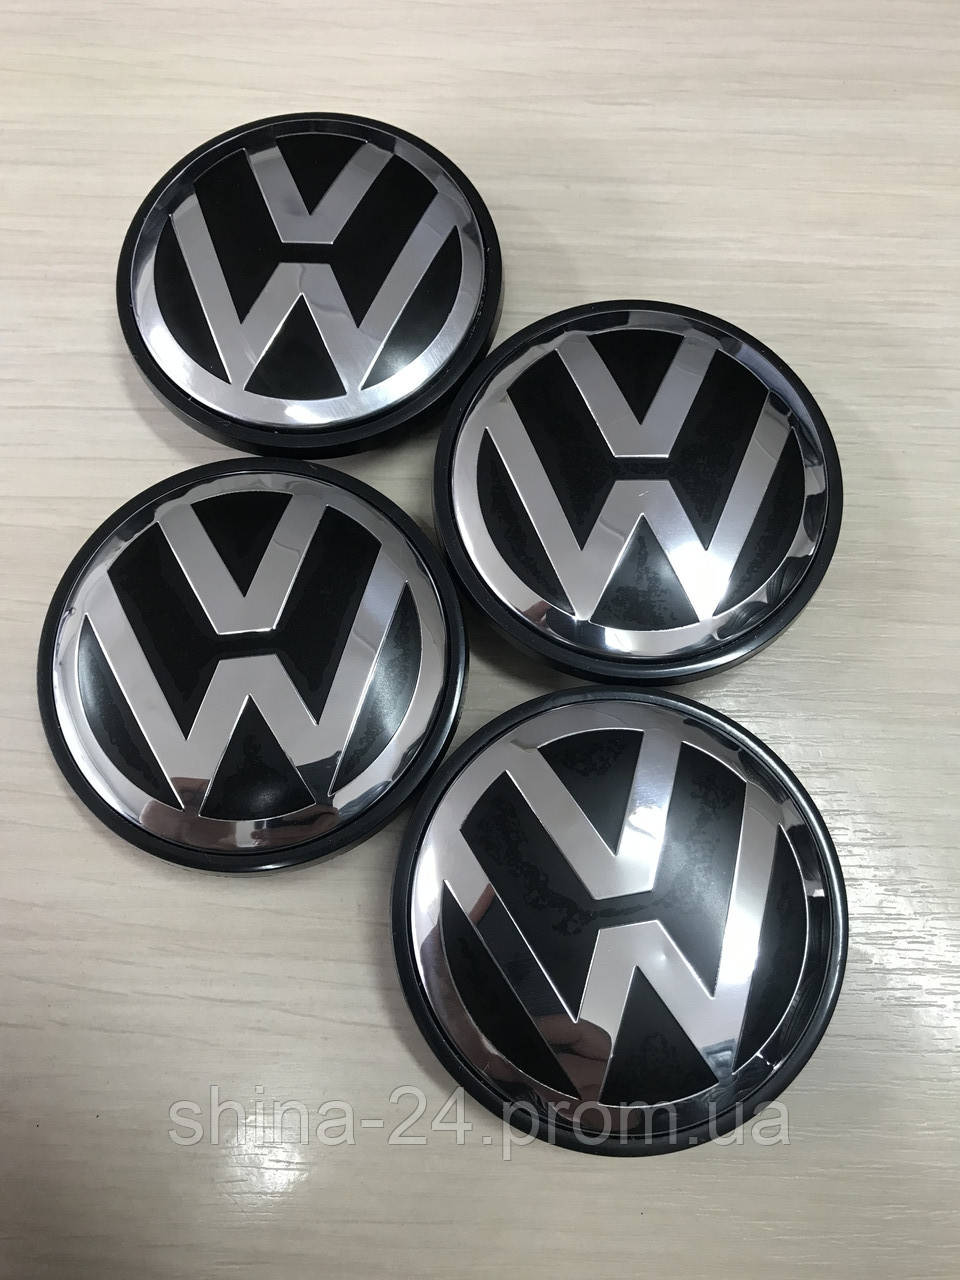 Колпачки заглушки на диски Volkswagen 7L6 601 149  76/65/13 мм.